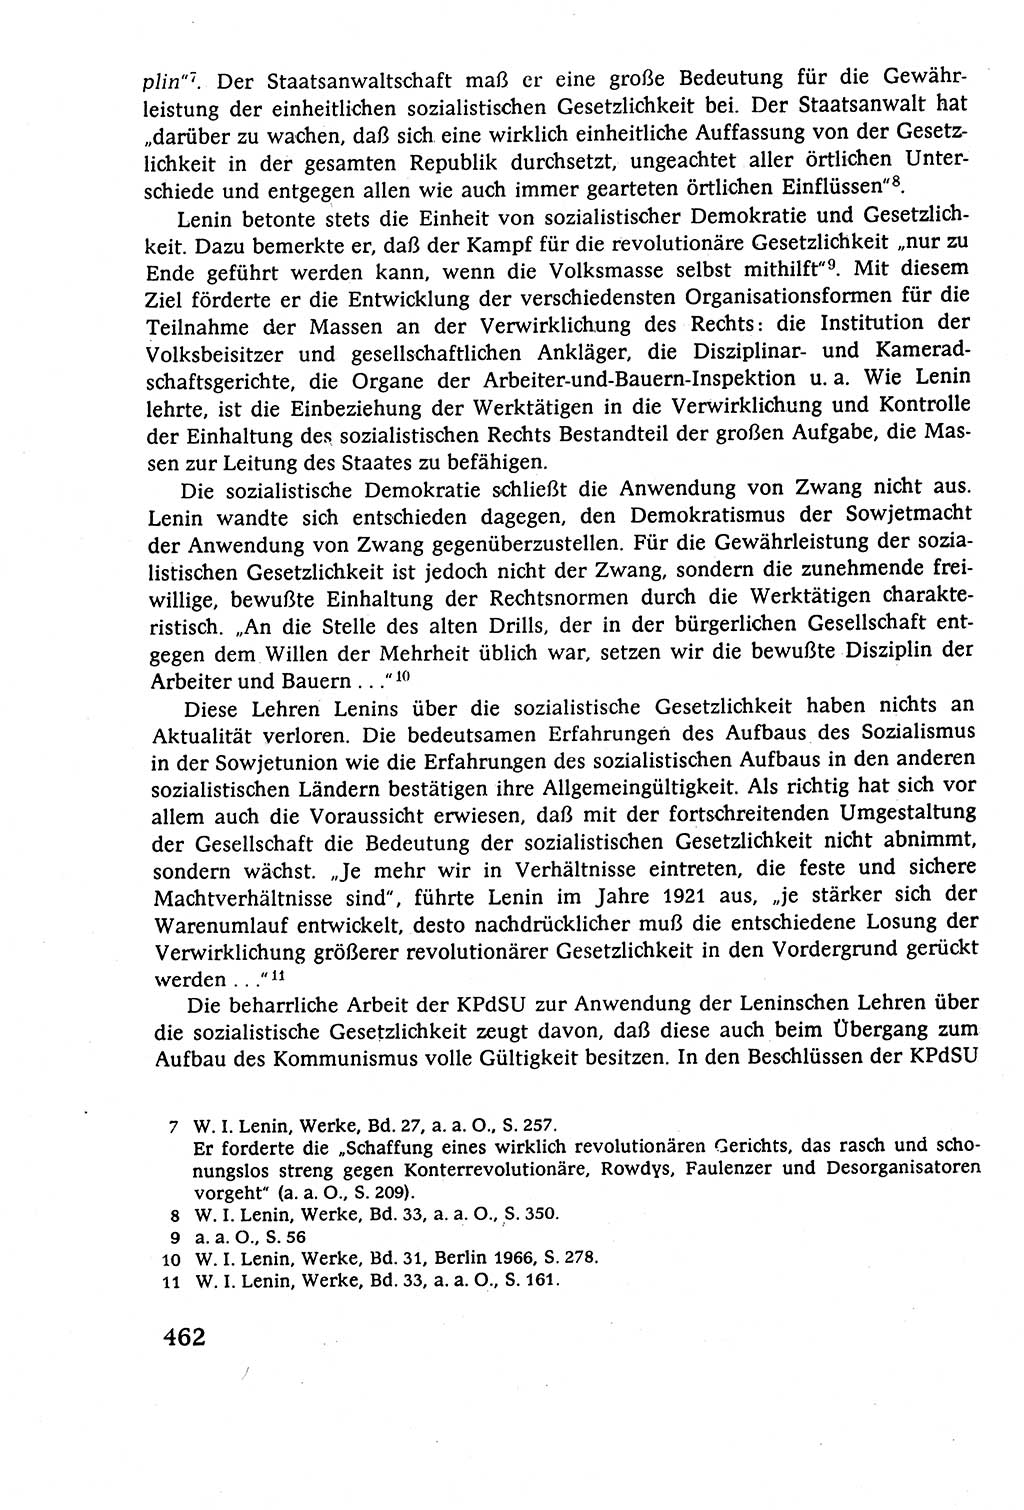 Staatsrecht der DDR (Deutsche Demokratische Republik), Lehrbuch 1977, Seite 462 (St.-R. DDR Lb. 1977, S. 462)